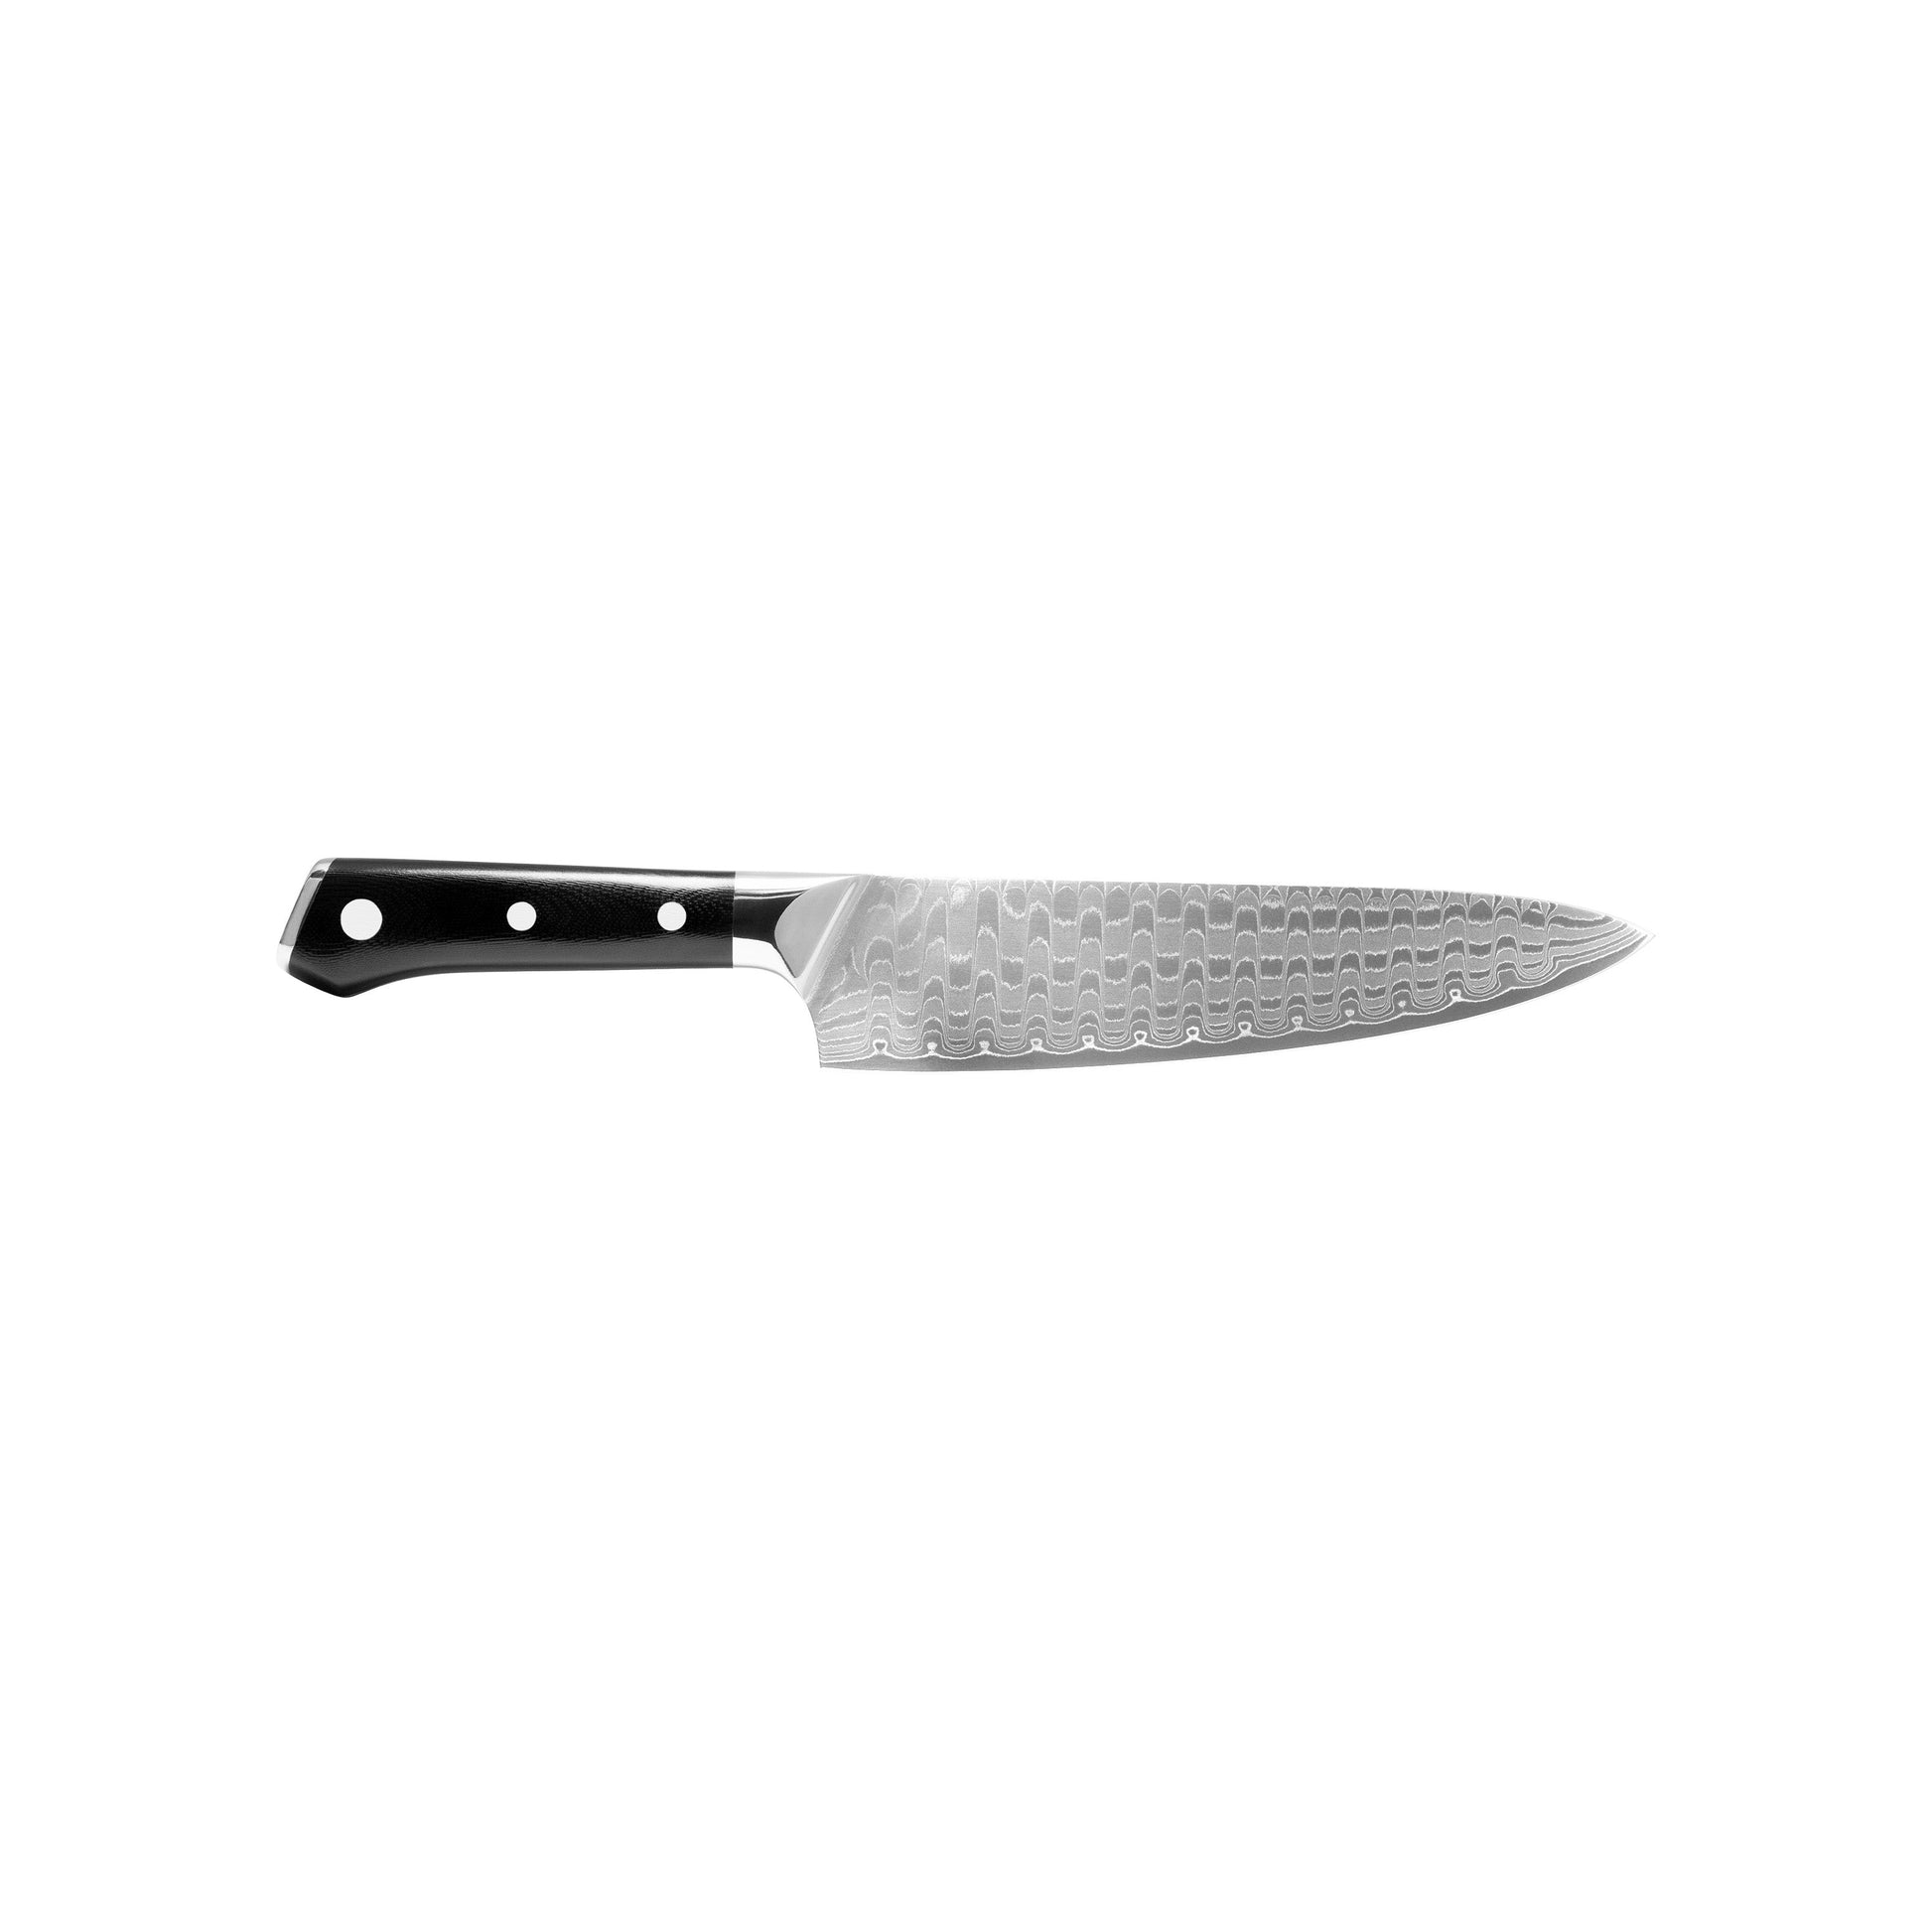 ZLINE 8 in. Professional Damascus Steel Chef’s Knife (KCKT-JD)-Knives-KCKT-JD ZLINE Kitchen and Bath